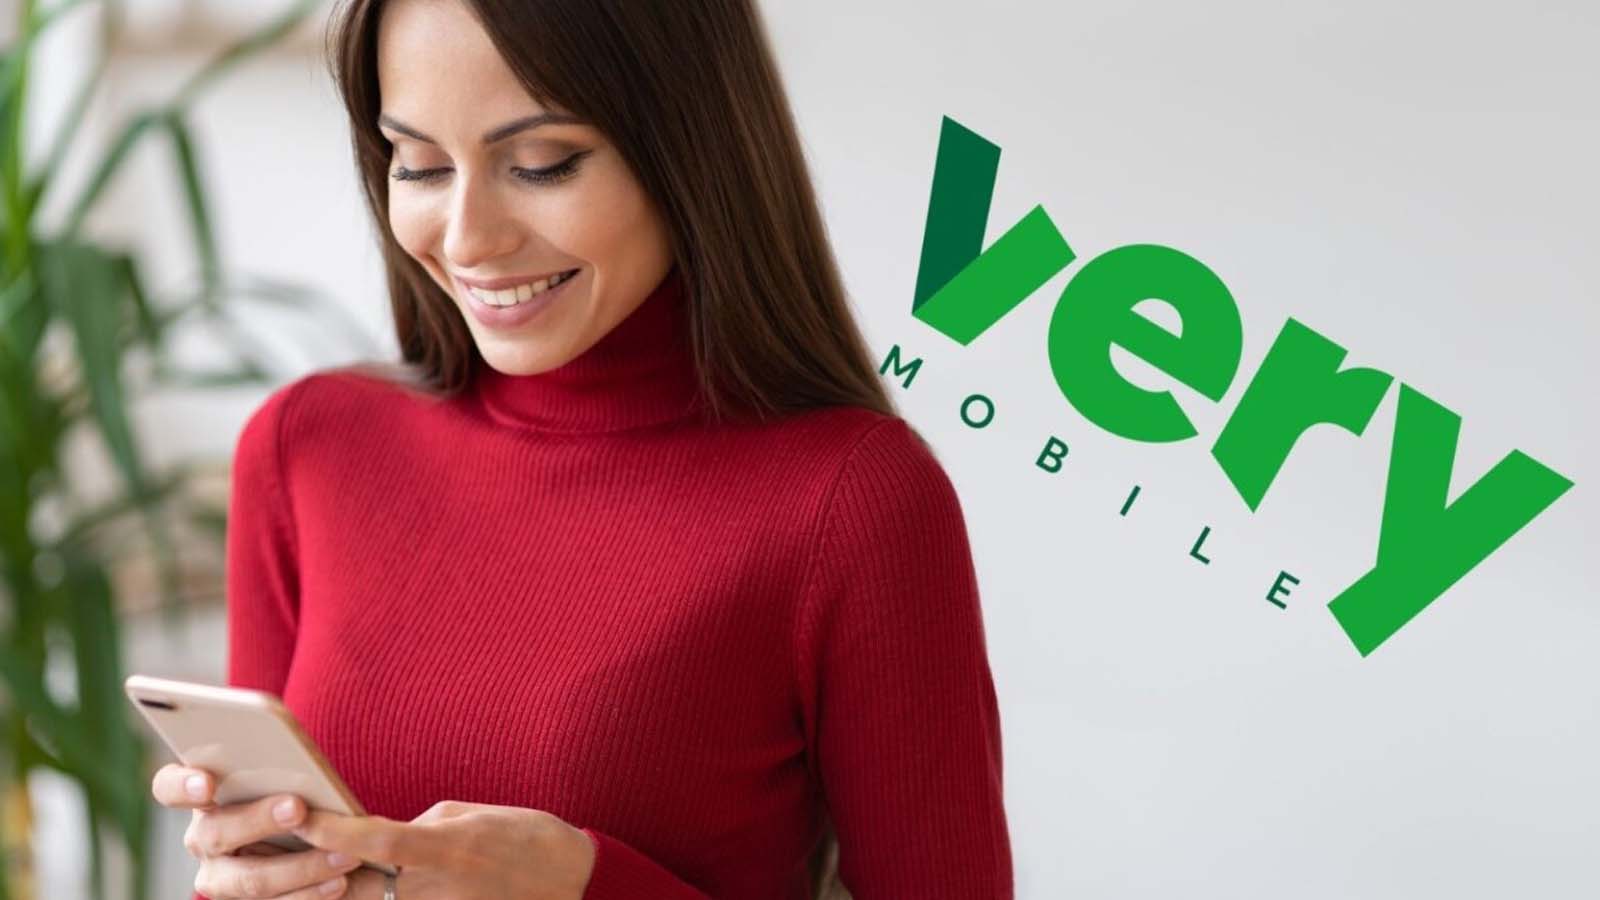 L’approccio innovativo di Very Mobile e il suo impegno per la libertà del cliente